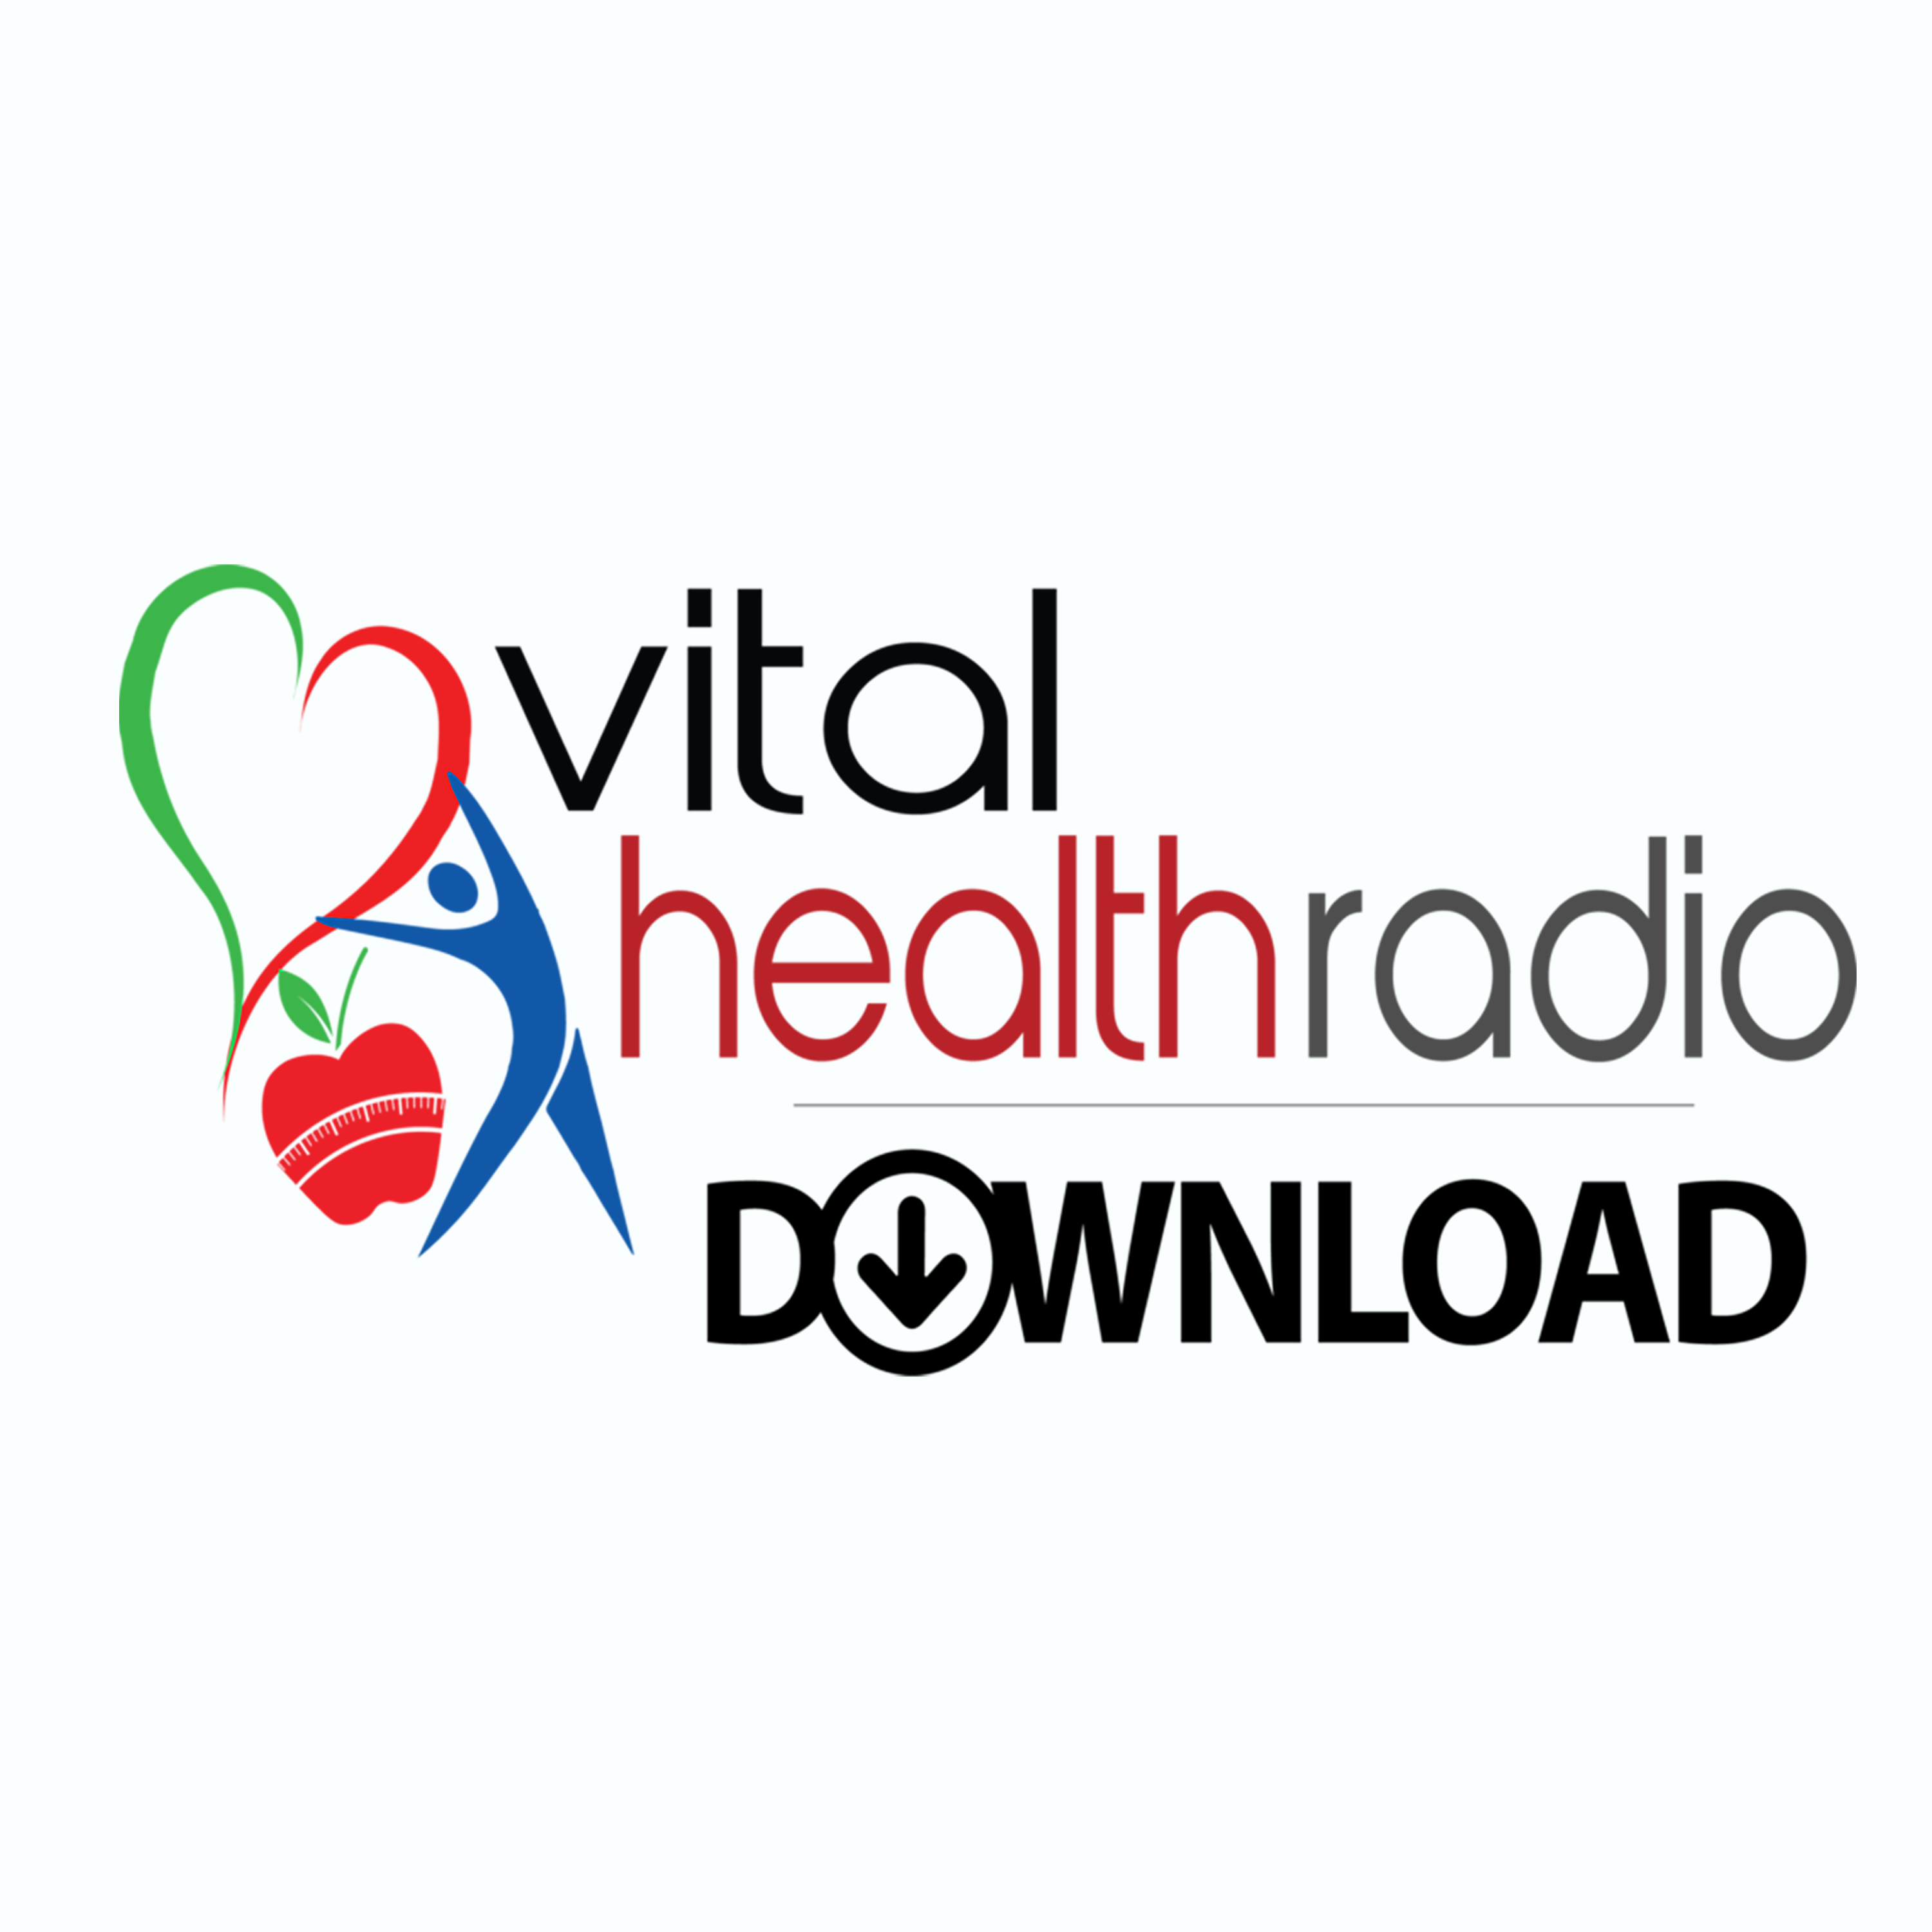 Vital Health Radio Download